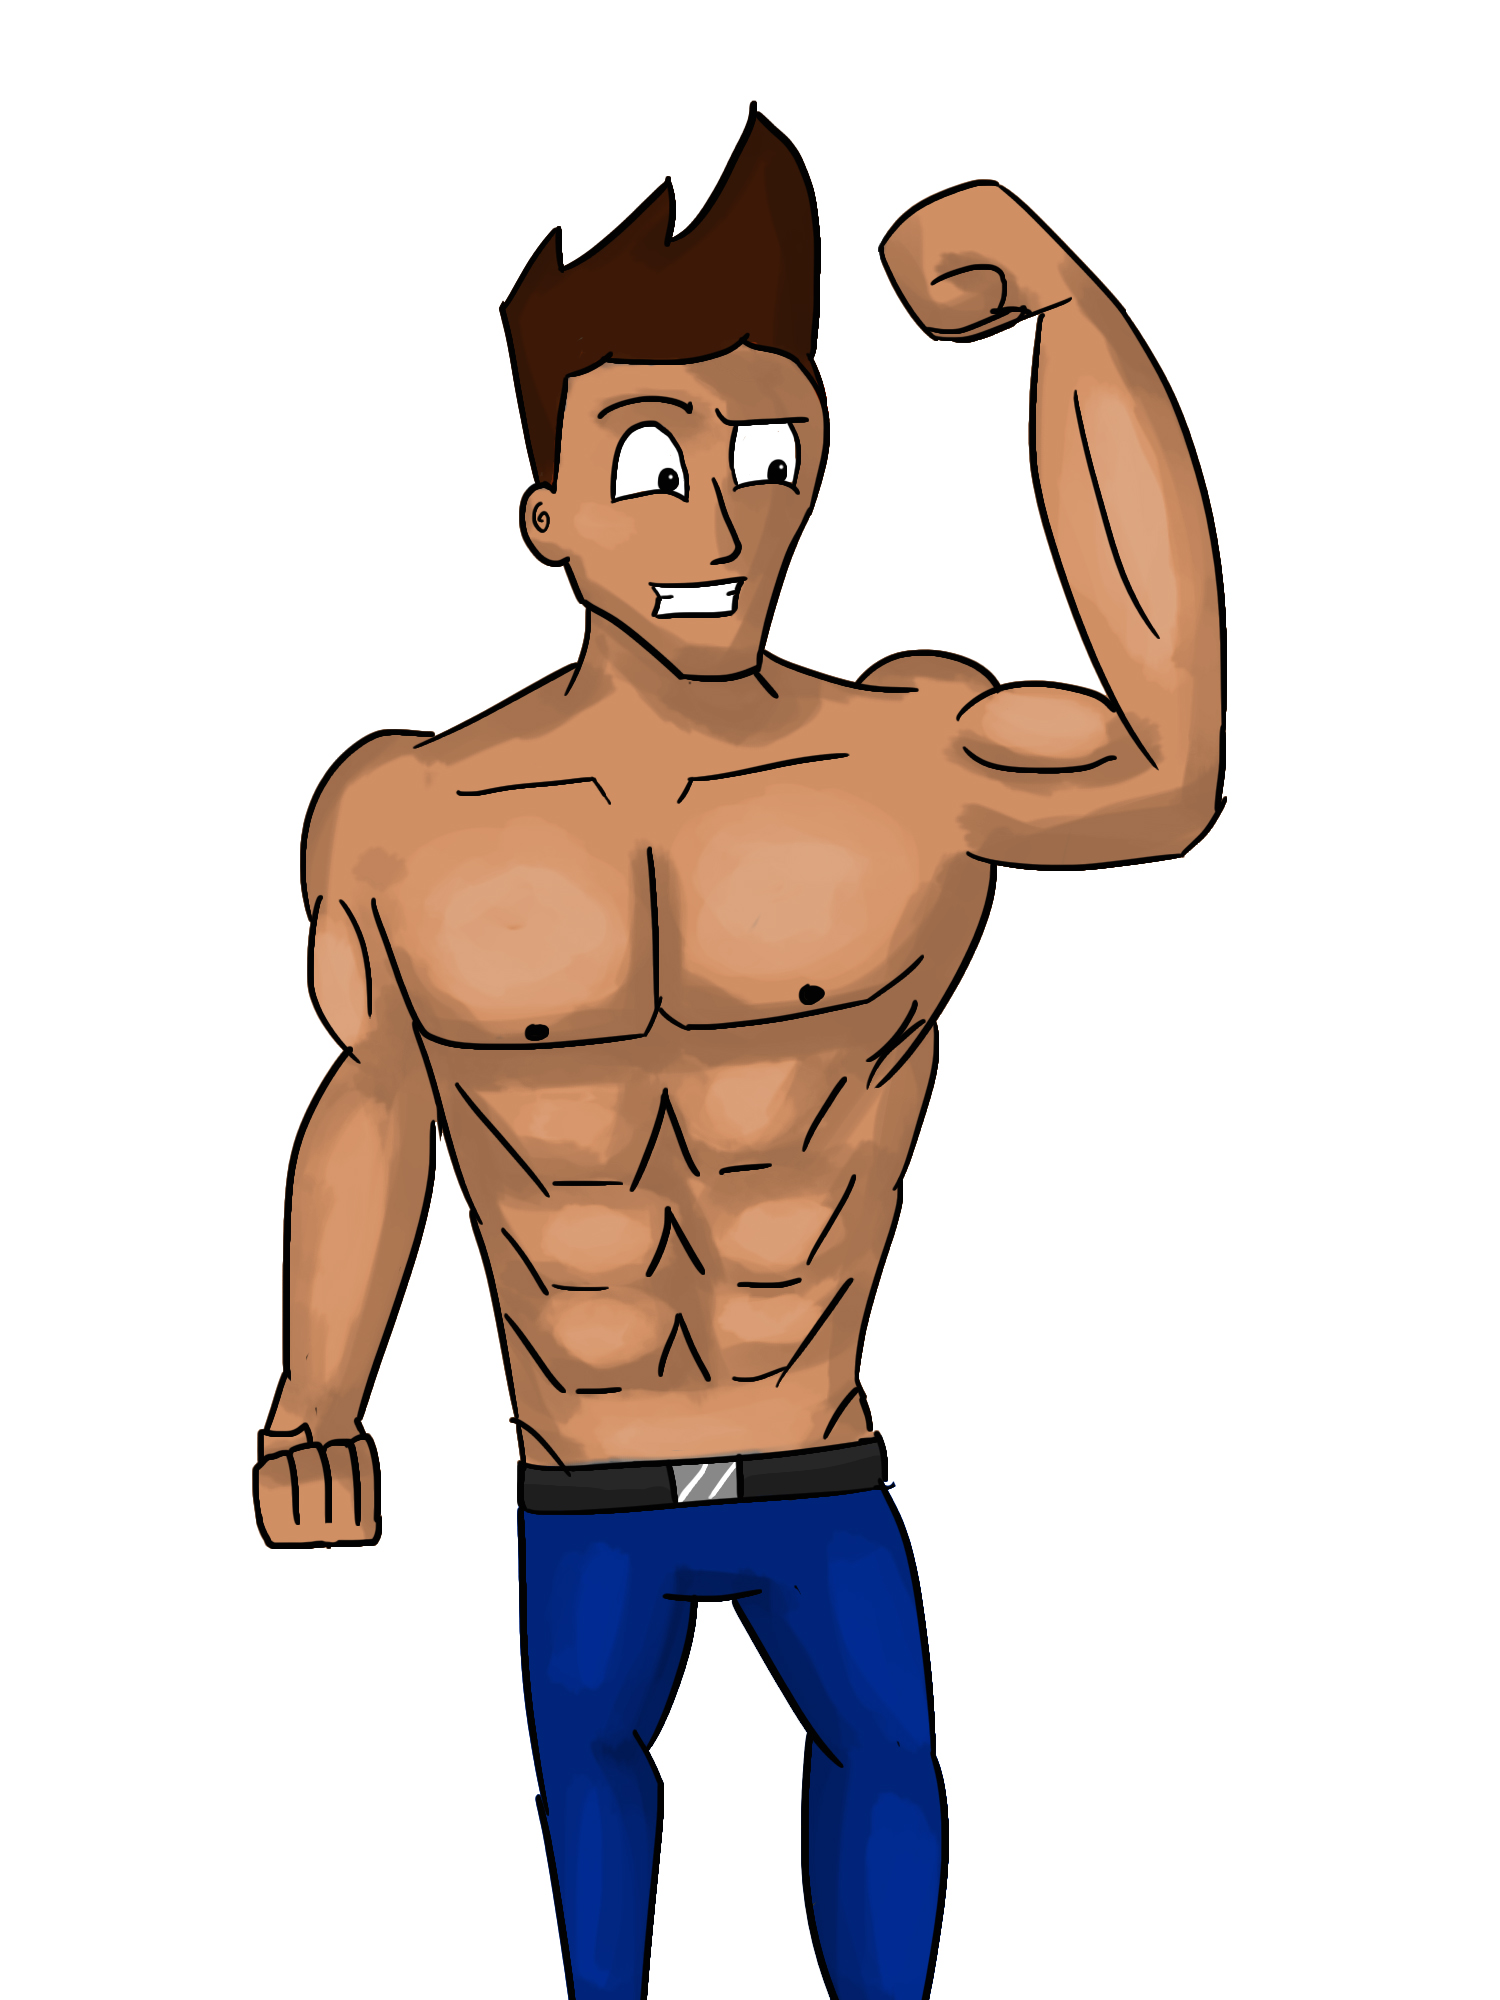 Buff Guy Drawing : Muscle Man Sketch Drawing Muscular Body Buff Guy ...